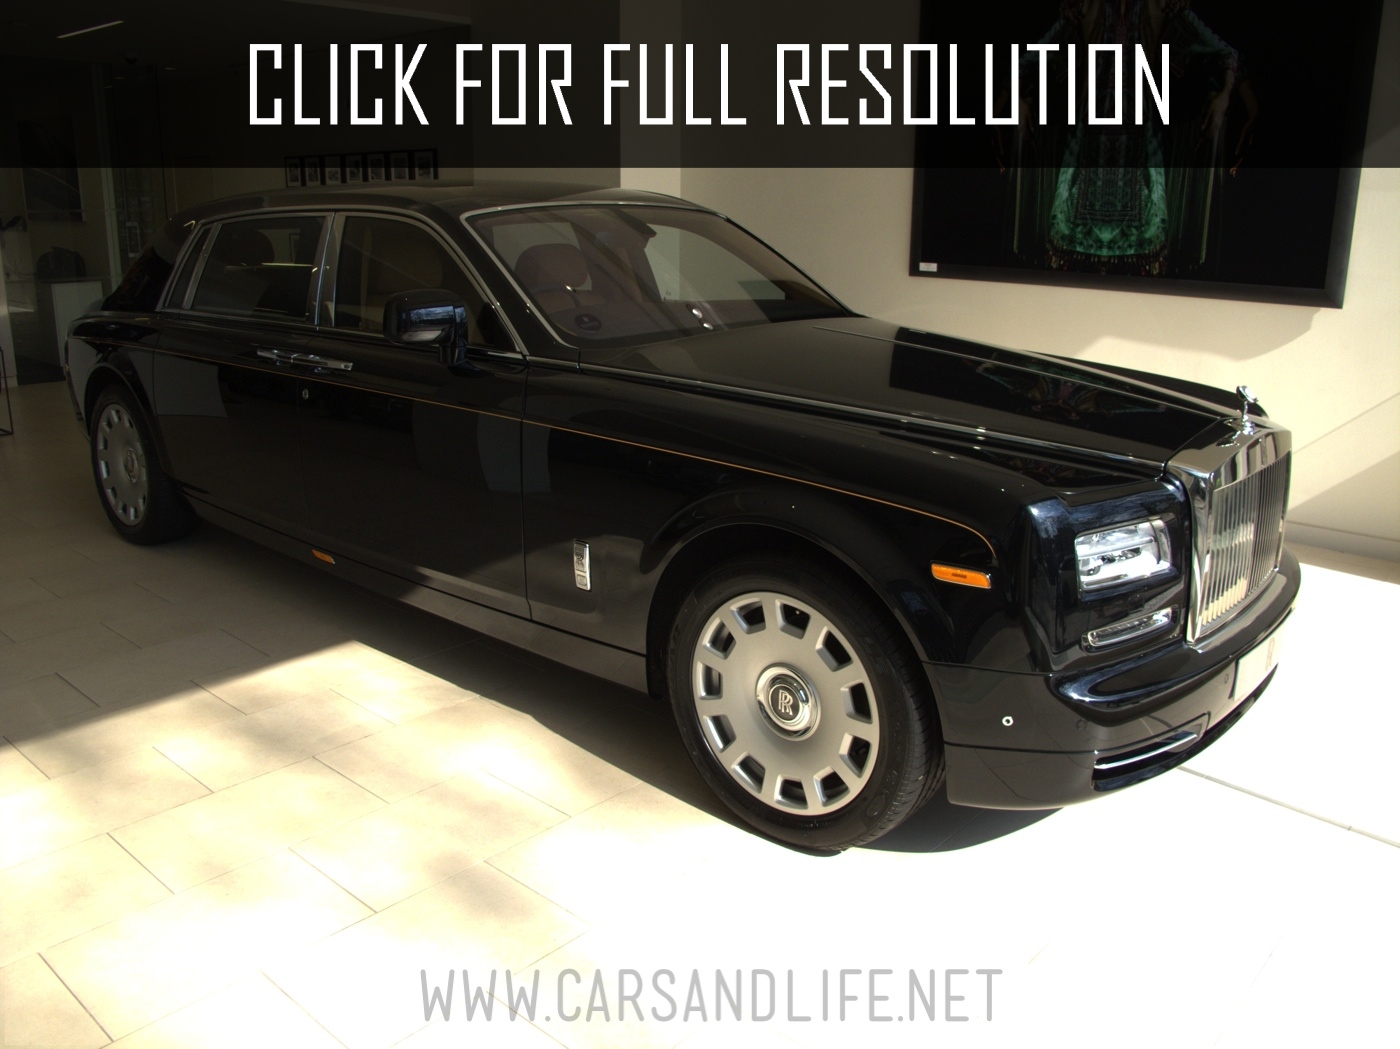 2010 Rolls Royce Phantom Extended Wheelbase